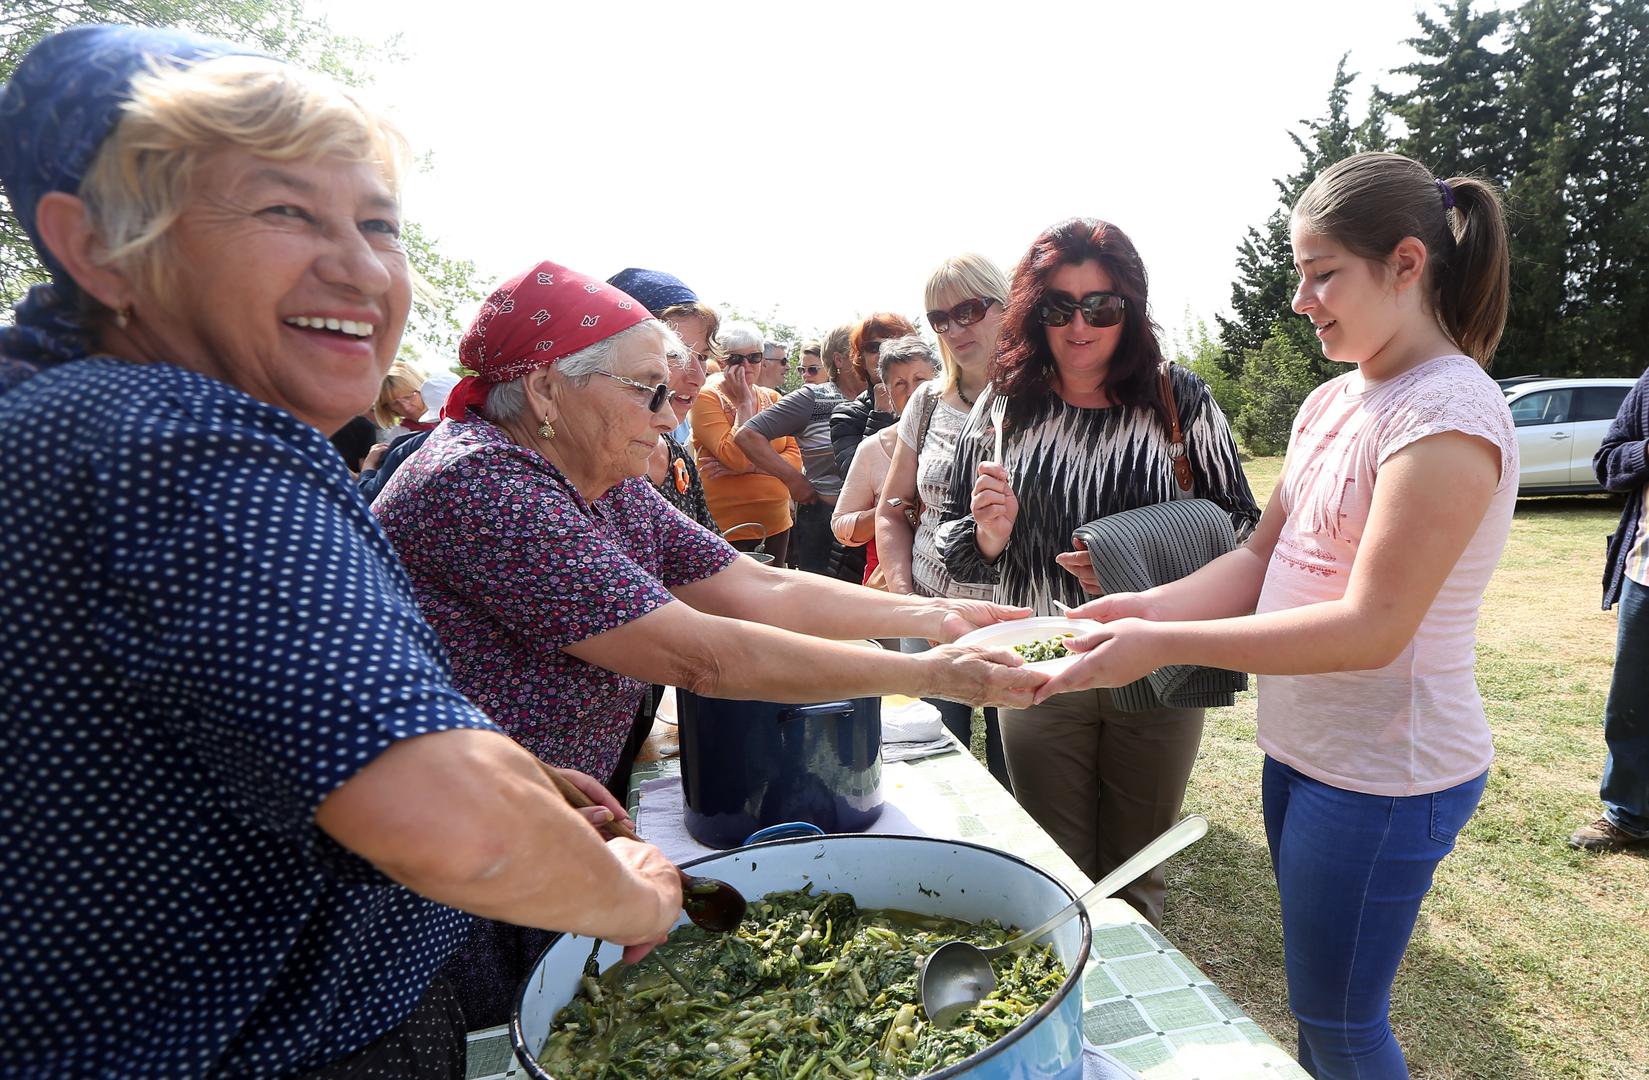 Turistička zajednica grada Vodica pripremila je tradicionalni prvosvibanjski piknik u Rakitnici kraj crkve sv. Ivana. 